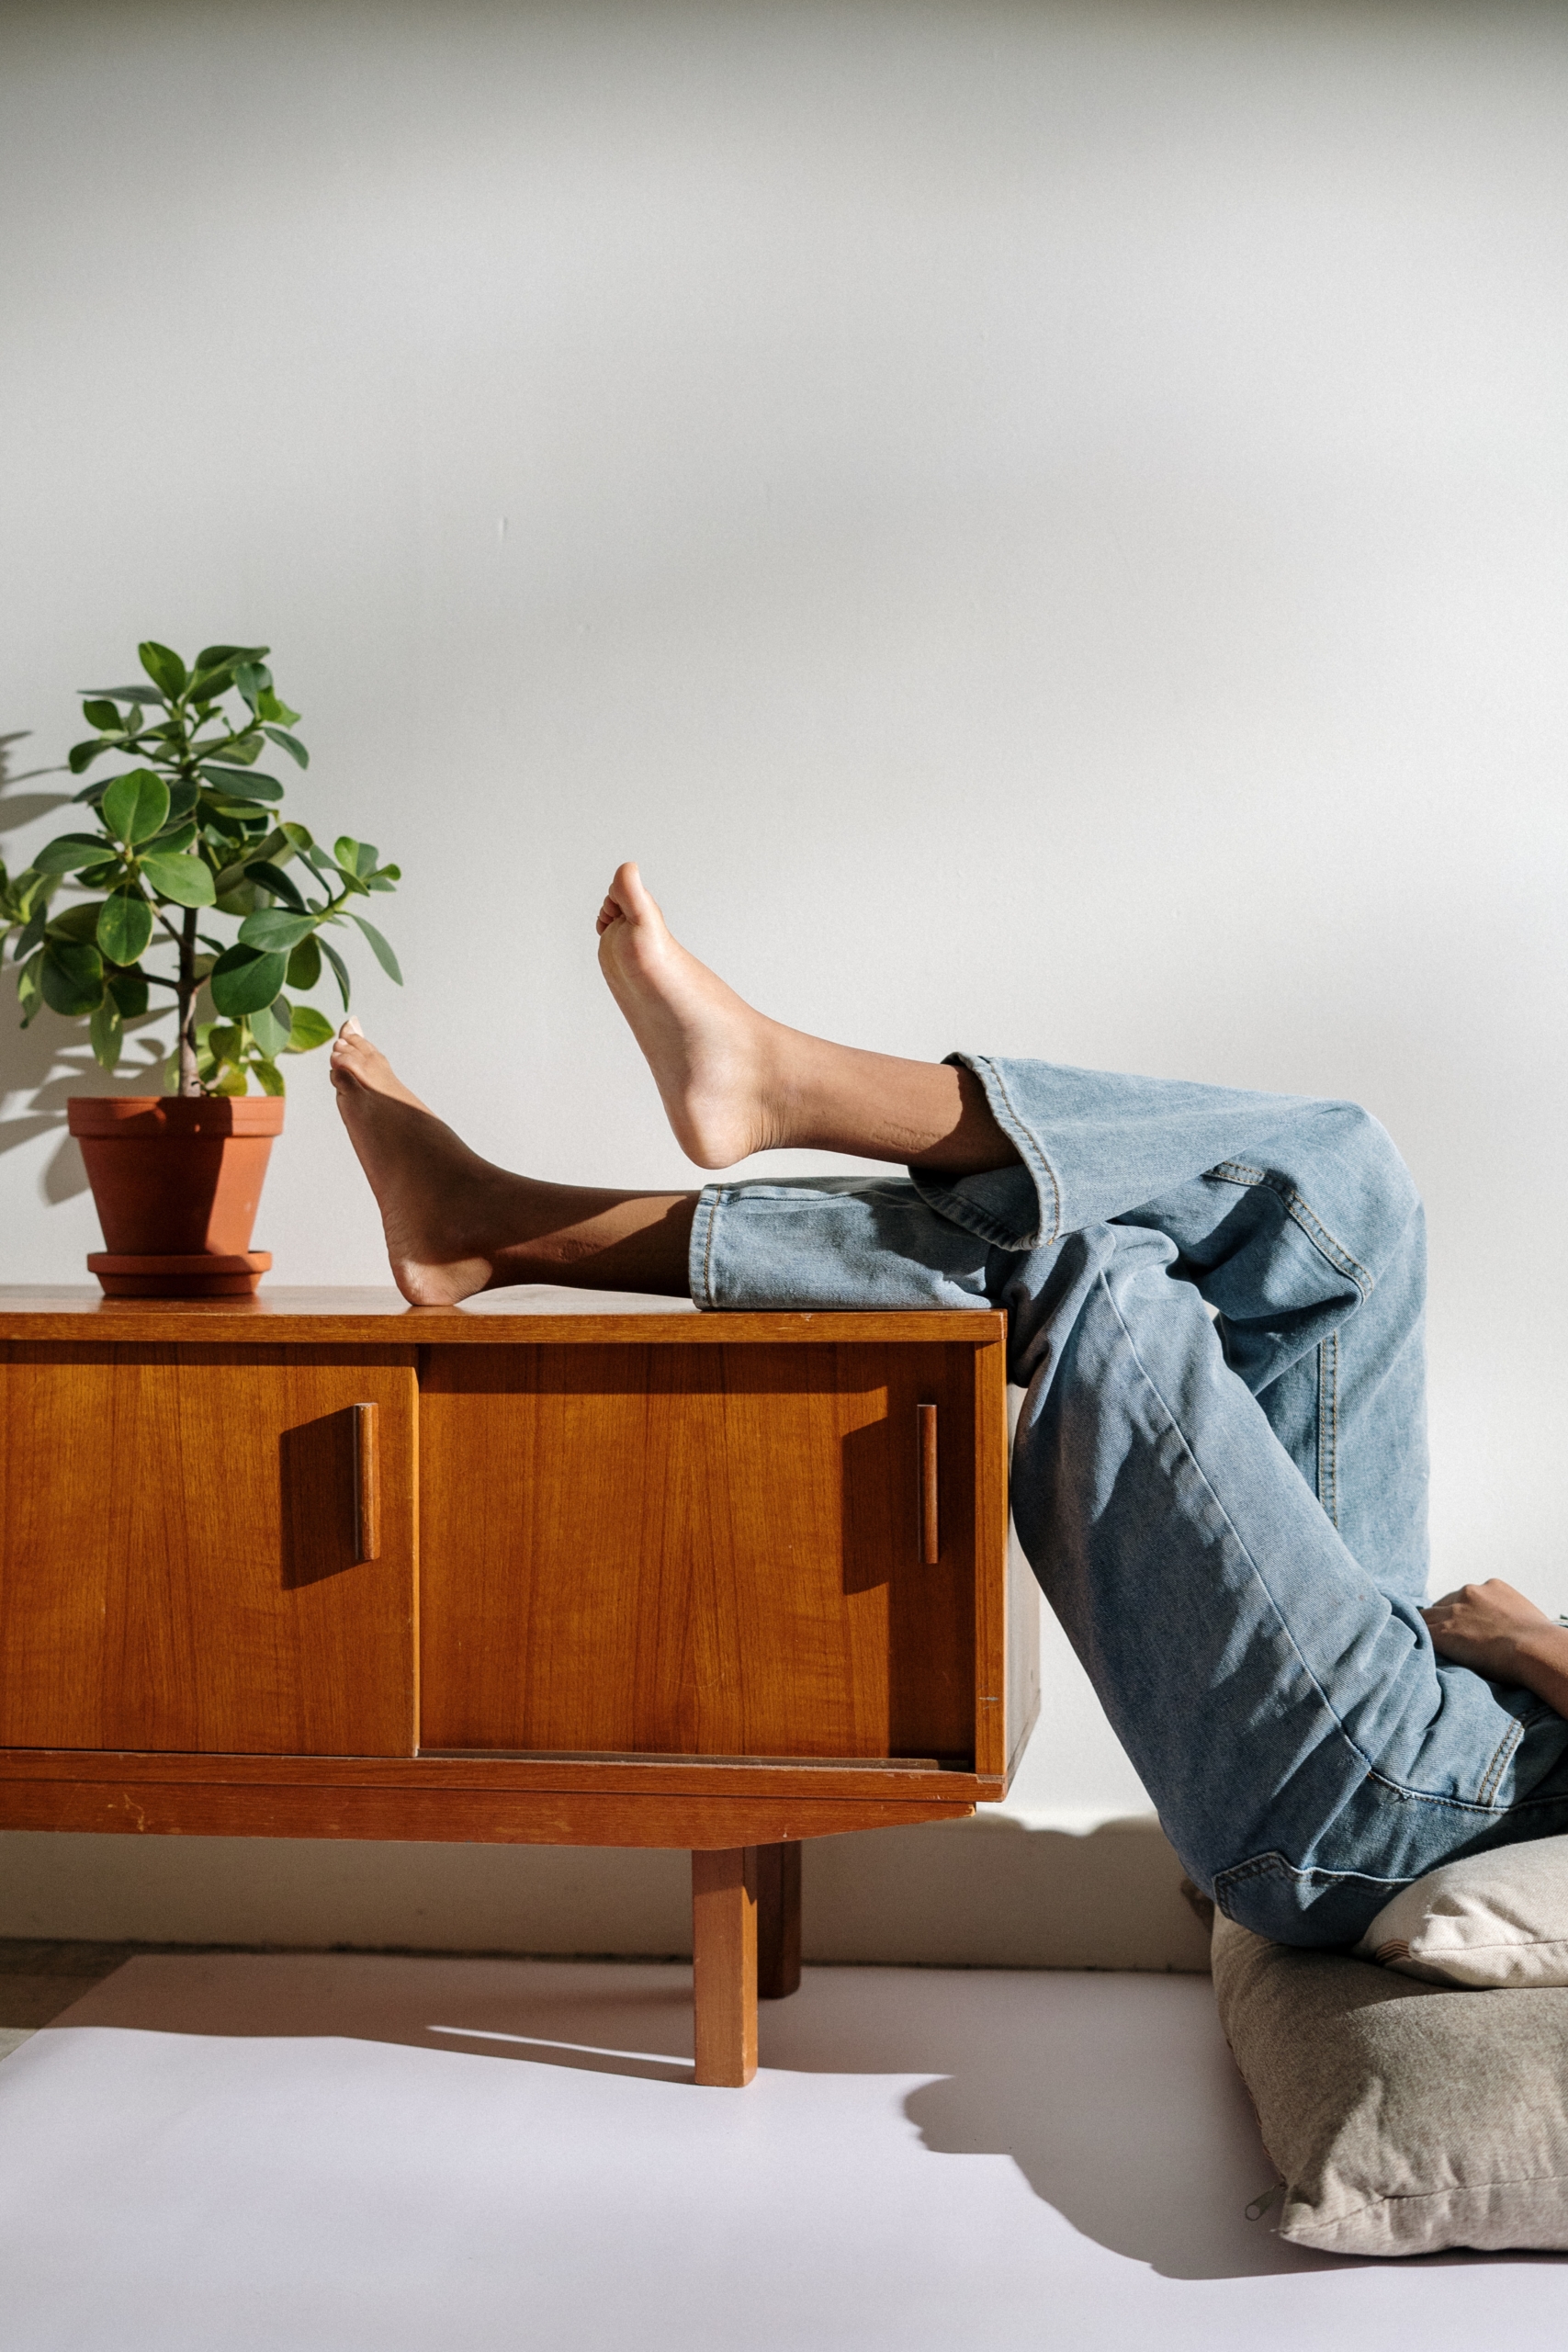 Mueble aparador de madera con planta y piernas de una persona apoyadas en el